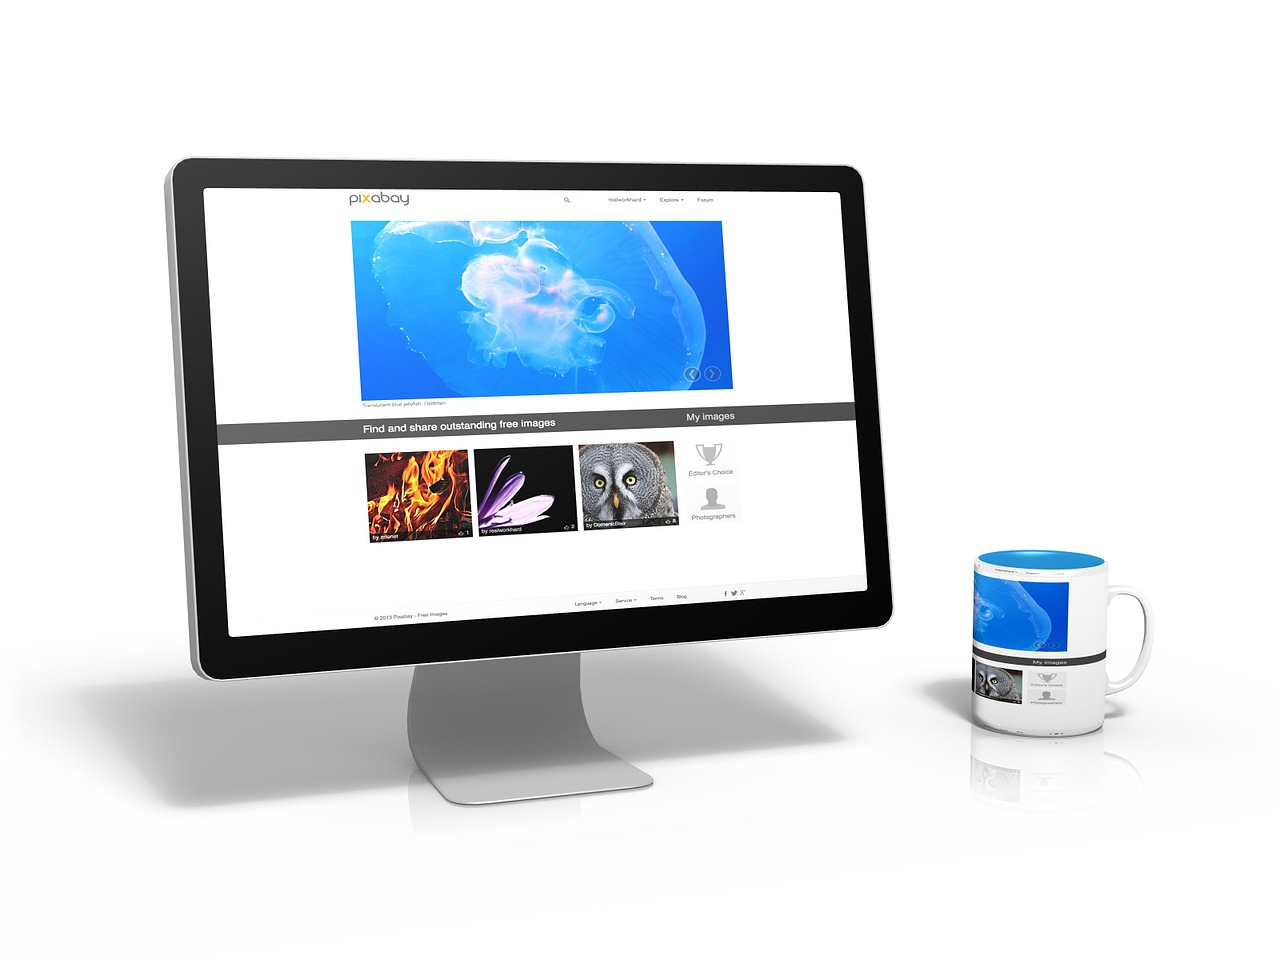 Pc, Kompiuteris, Vaizdai, Interneto Puslapis, Pixabay, Taurė, Stalas, Veidrodis, Internetas, Laisvas